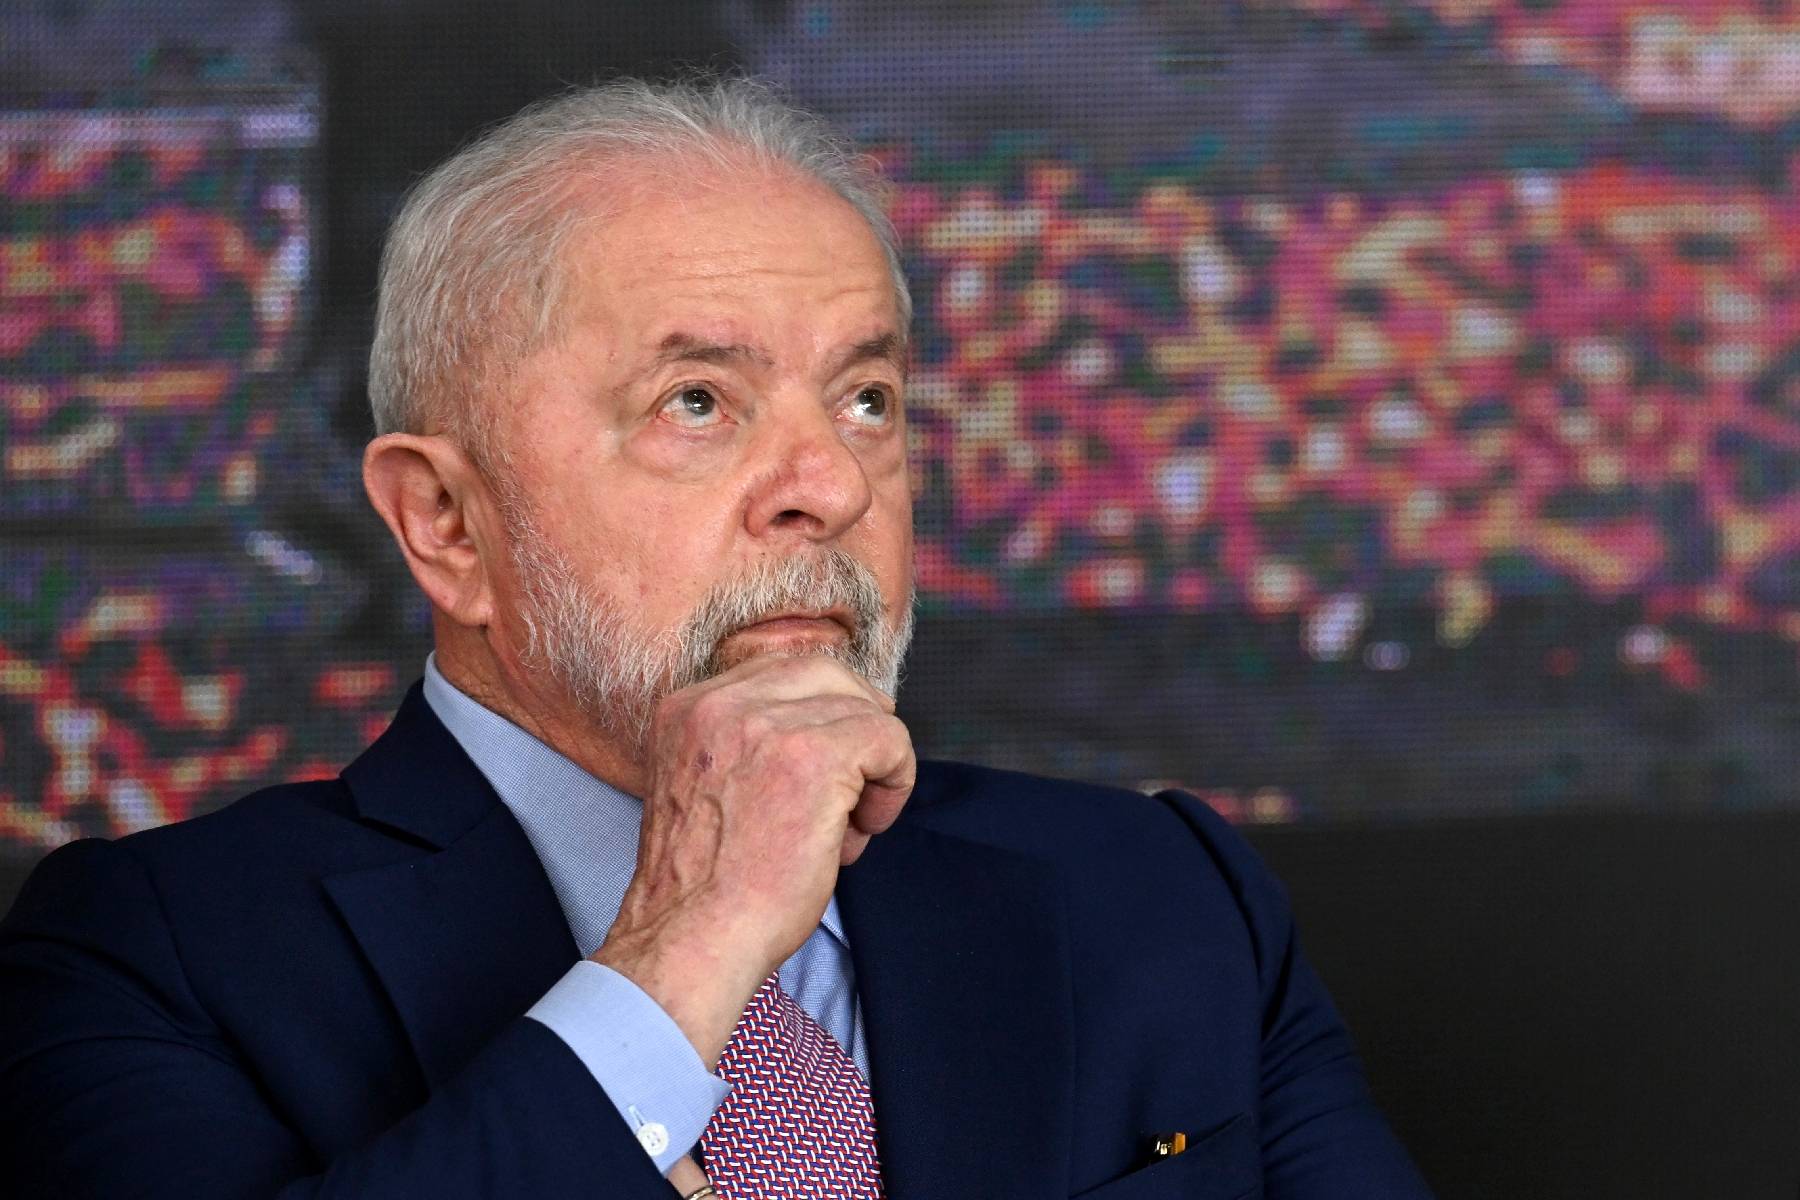 Après la Chine, Lula se tourne vers l'Europe en commençant par le Portugal